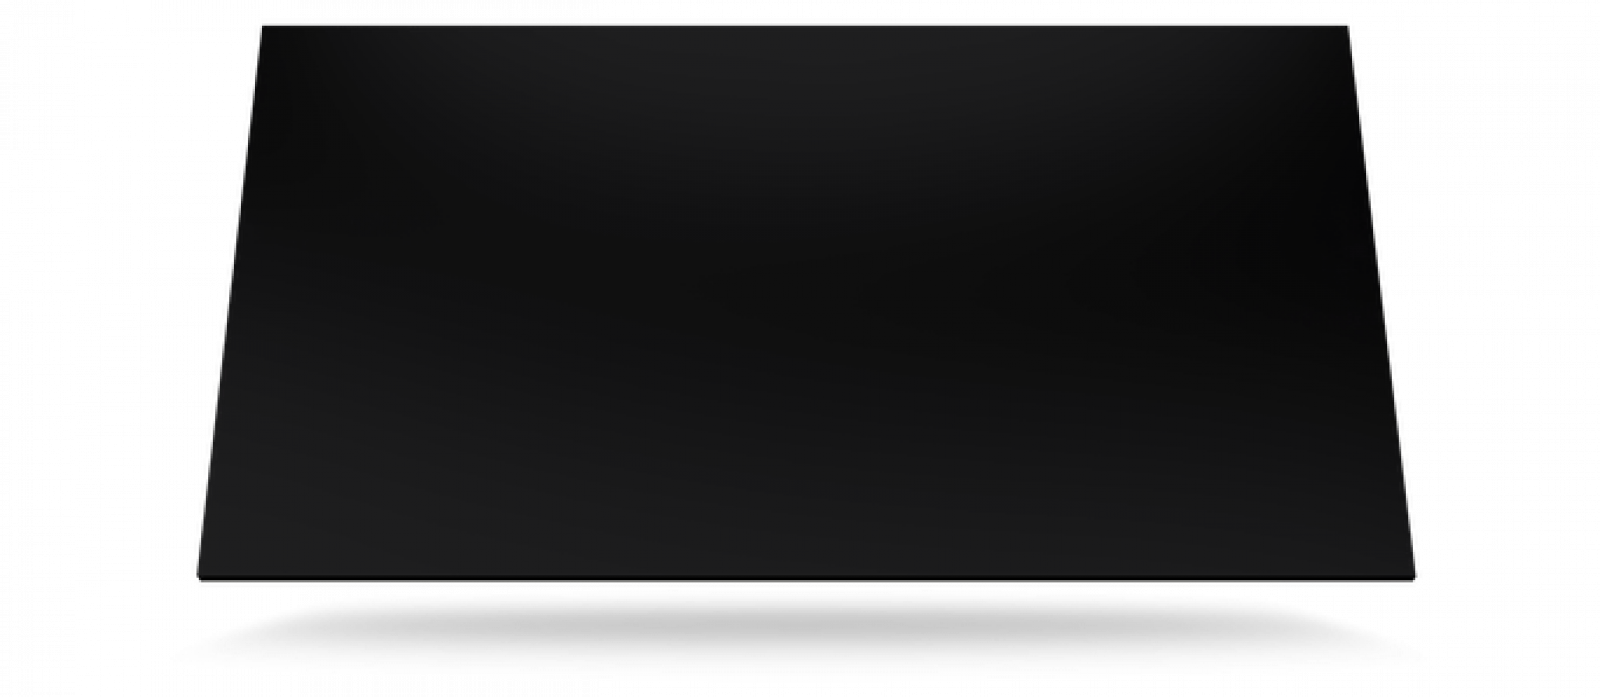 Dekton Spectra 159 x 142 cm Fliese Glanz